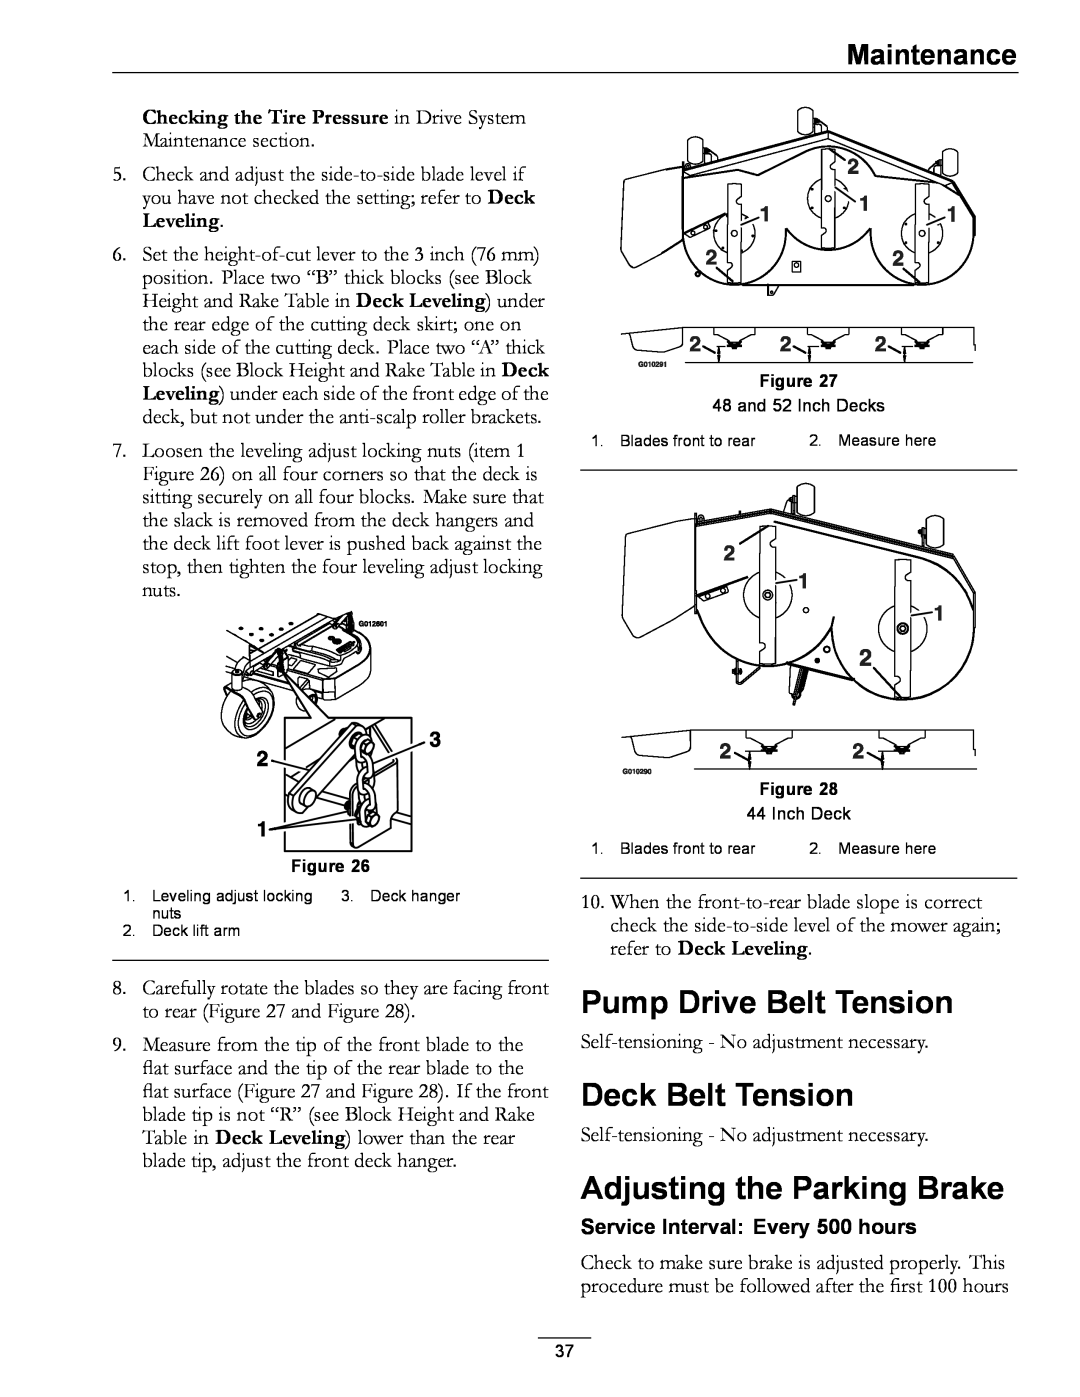 Exmark 00 & Higher, 850 manual Pump Drive Belt Tension, Deck Belt Tension, Adjusting the Parking Brake, Maintenance 